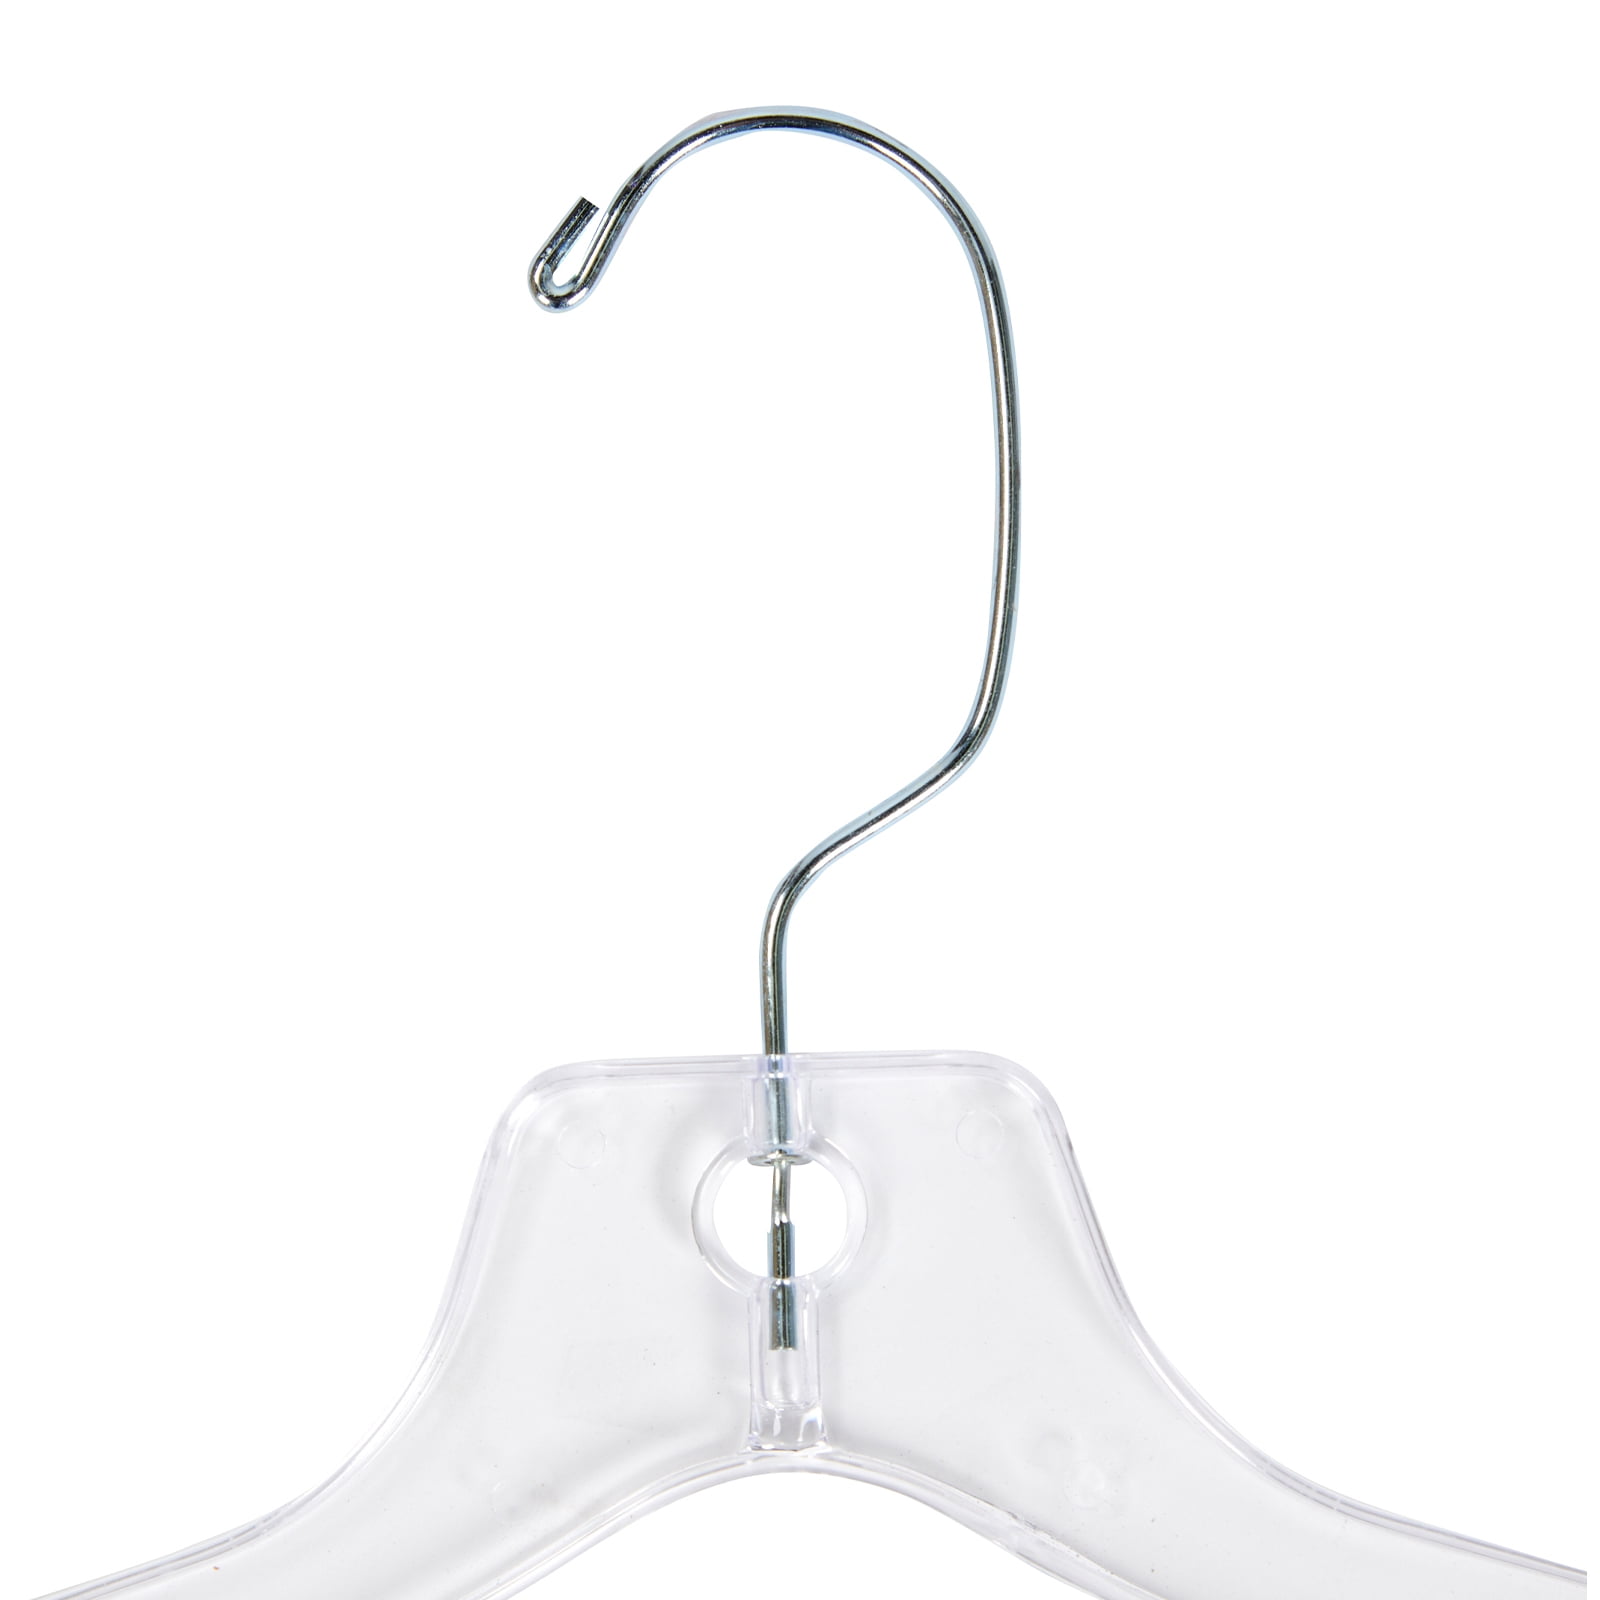 Black Plastic Top Hanger (17 X 1/2)